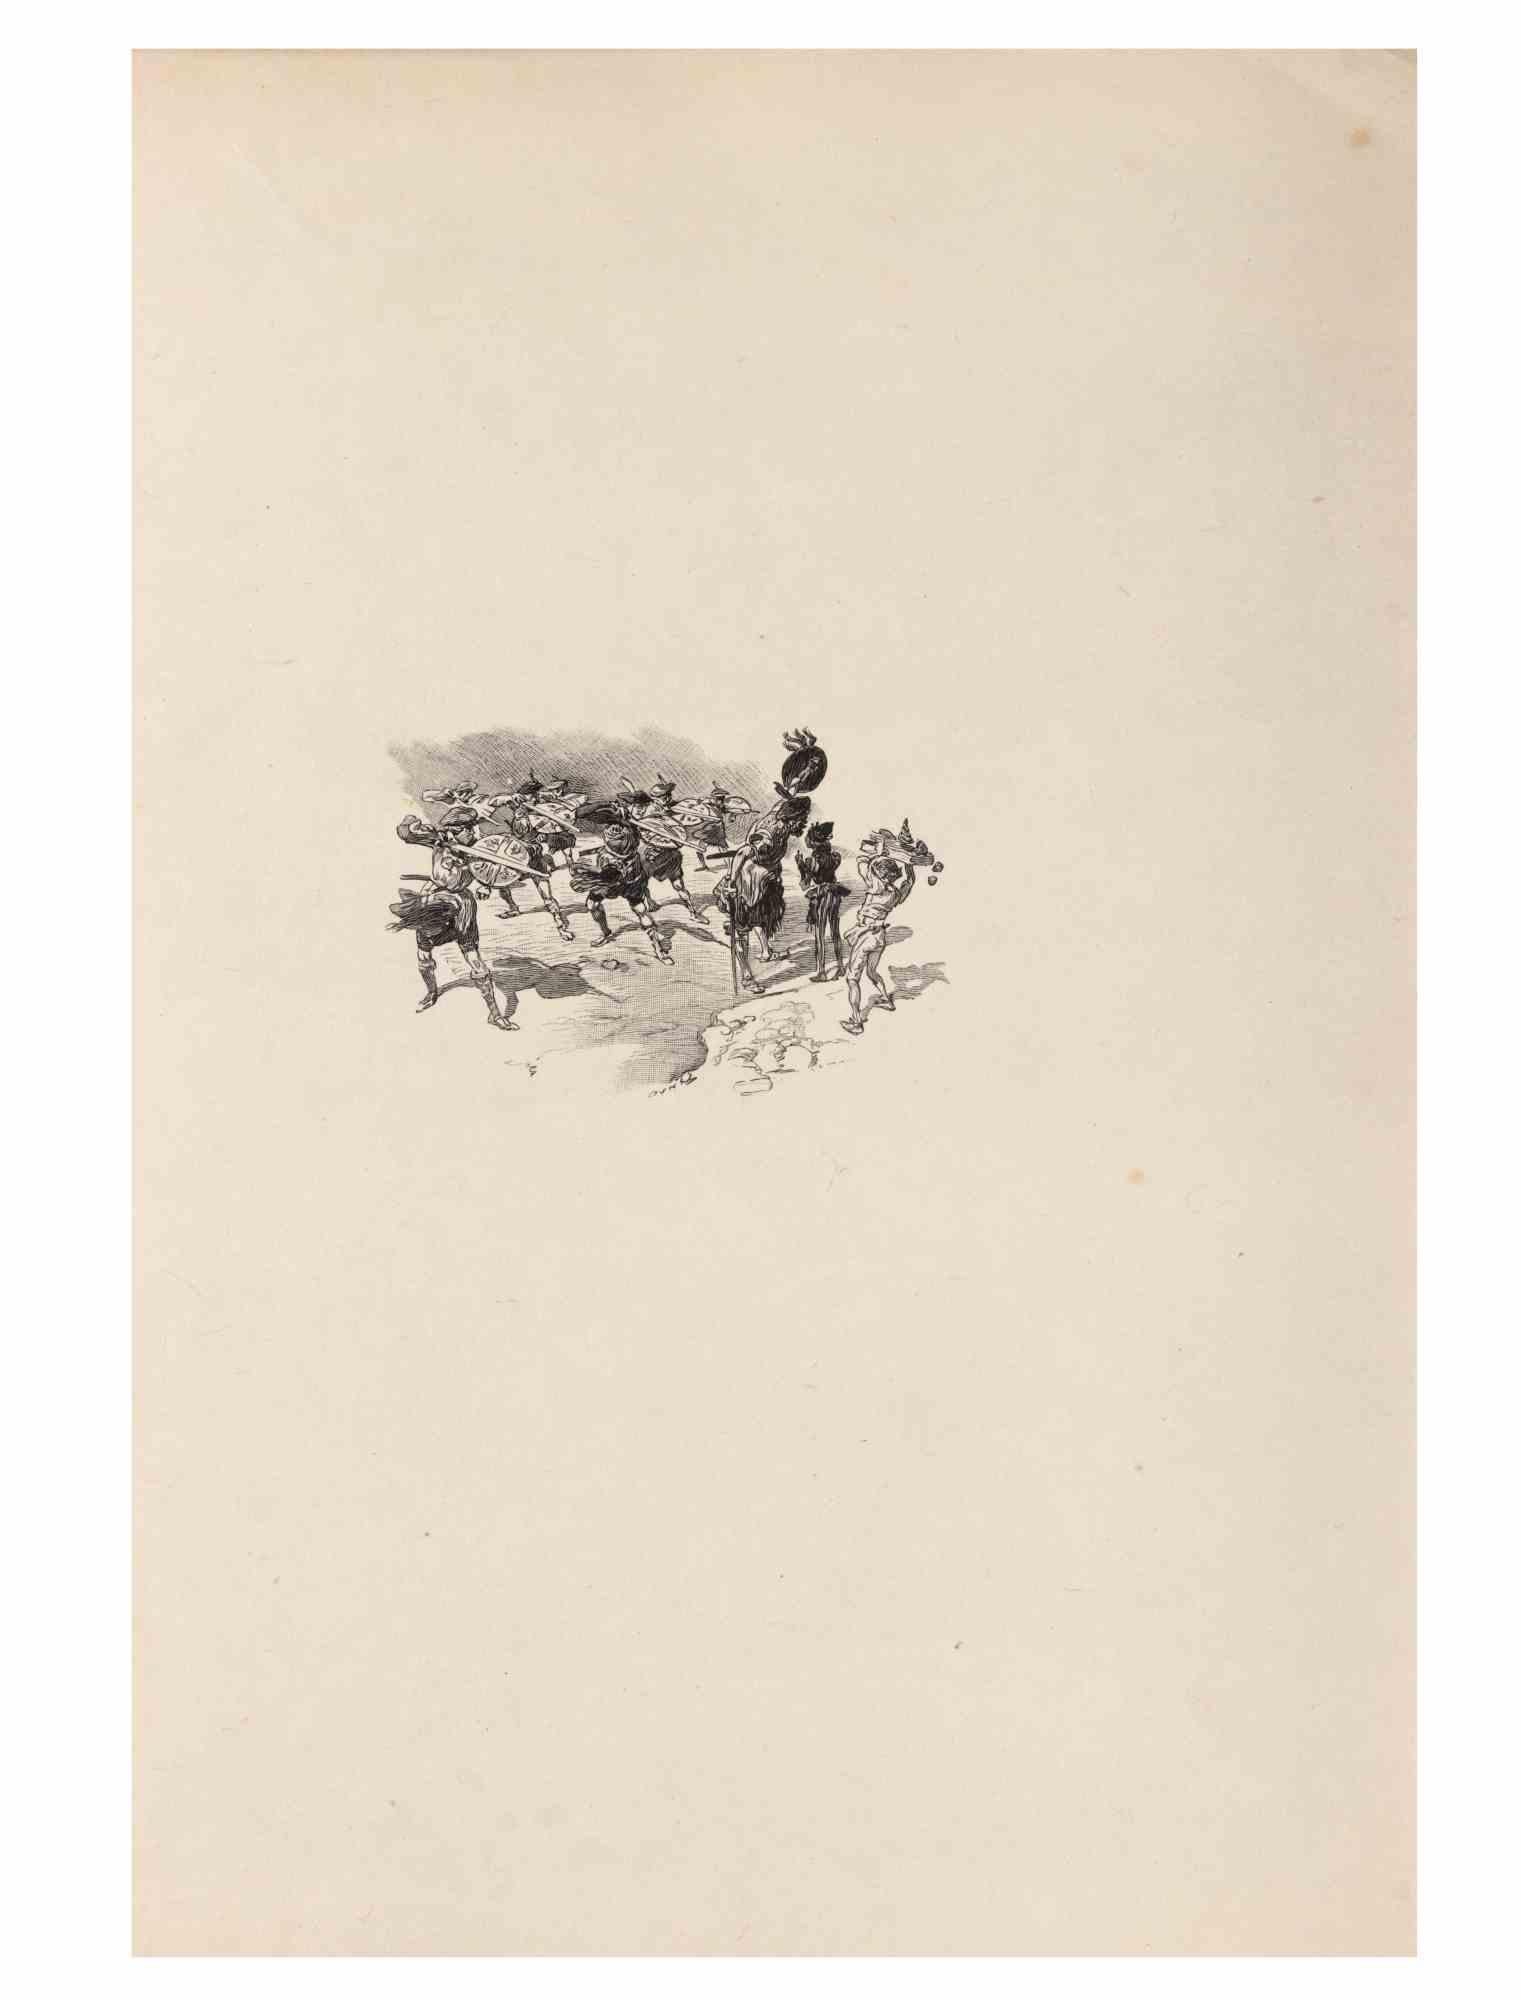 Petits Contes à ma Sœur ist eine Lithographie auf Papier von Hégésippe Moreau aus dem Jahr 1838.

Das Kunstwerk ist in gutem Zustand.

Hégésippe Moreau (1810-1838) war ein französischer Lyriker. Der romantische Mythos wurde durch die